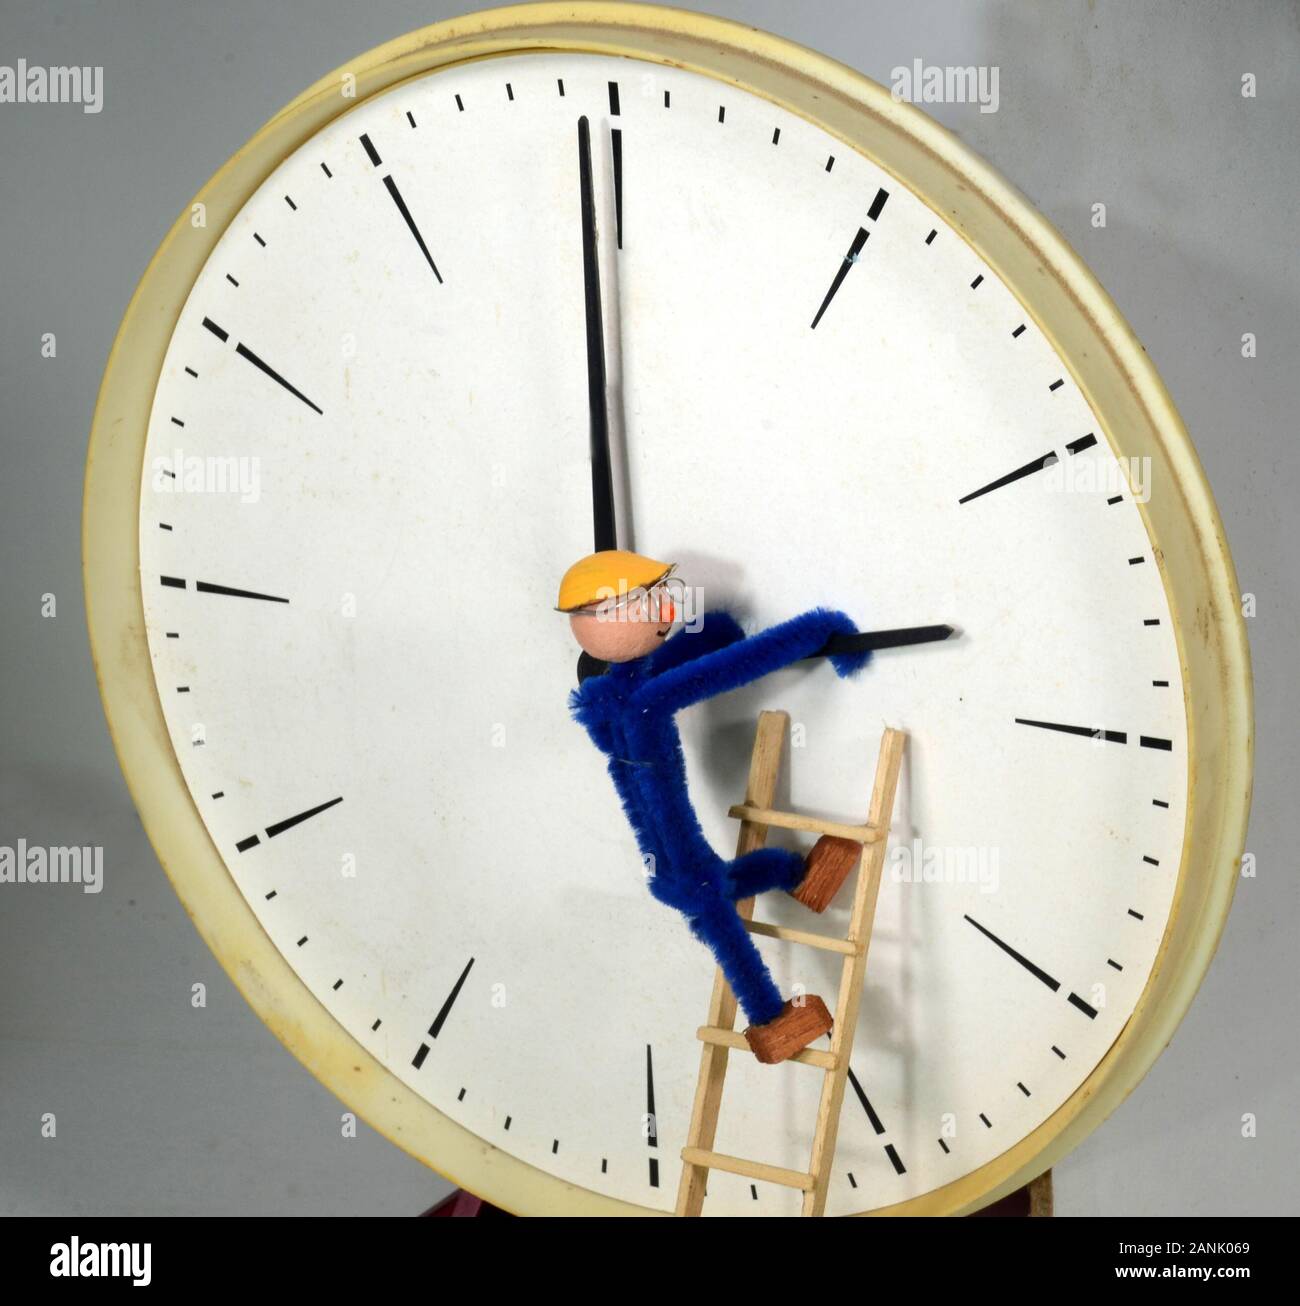 Ajuste Clockman un reloj o de horario de verano (DST) Foto de stock